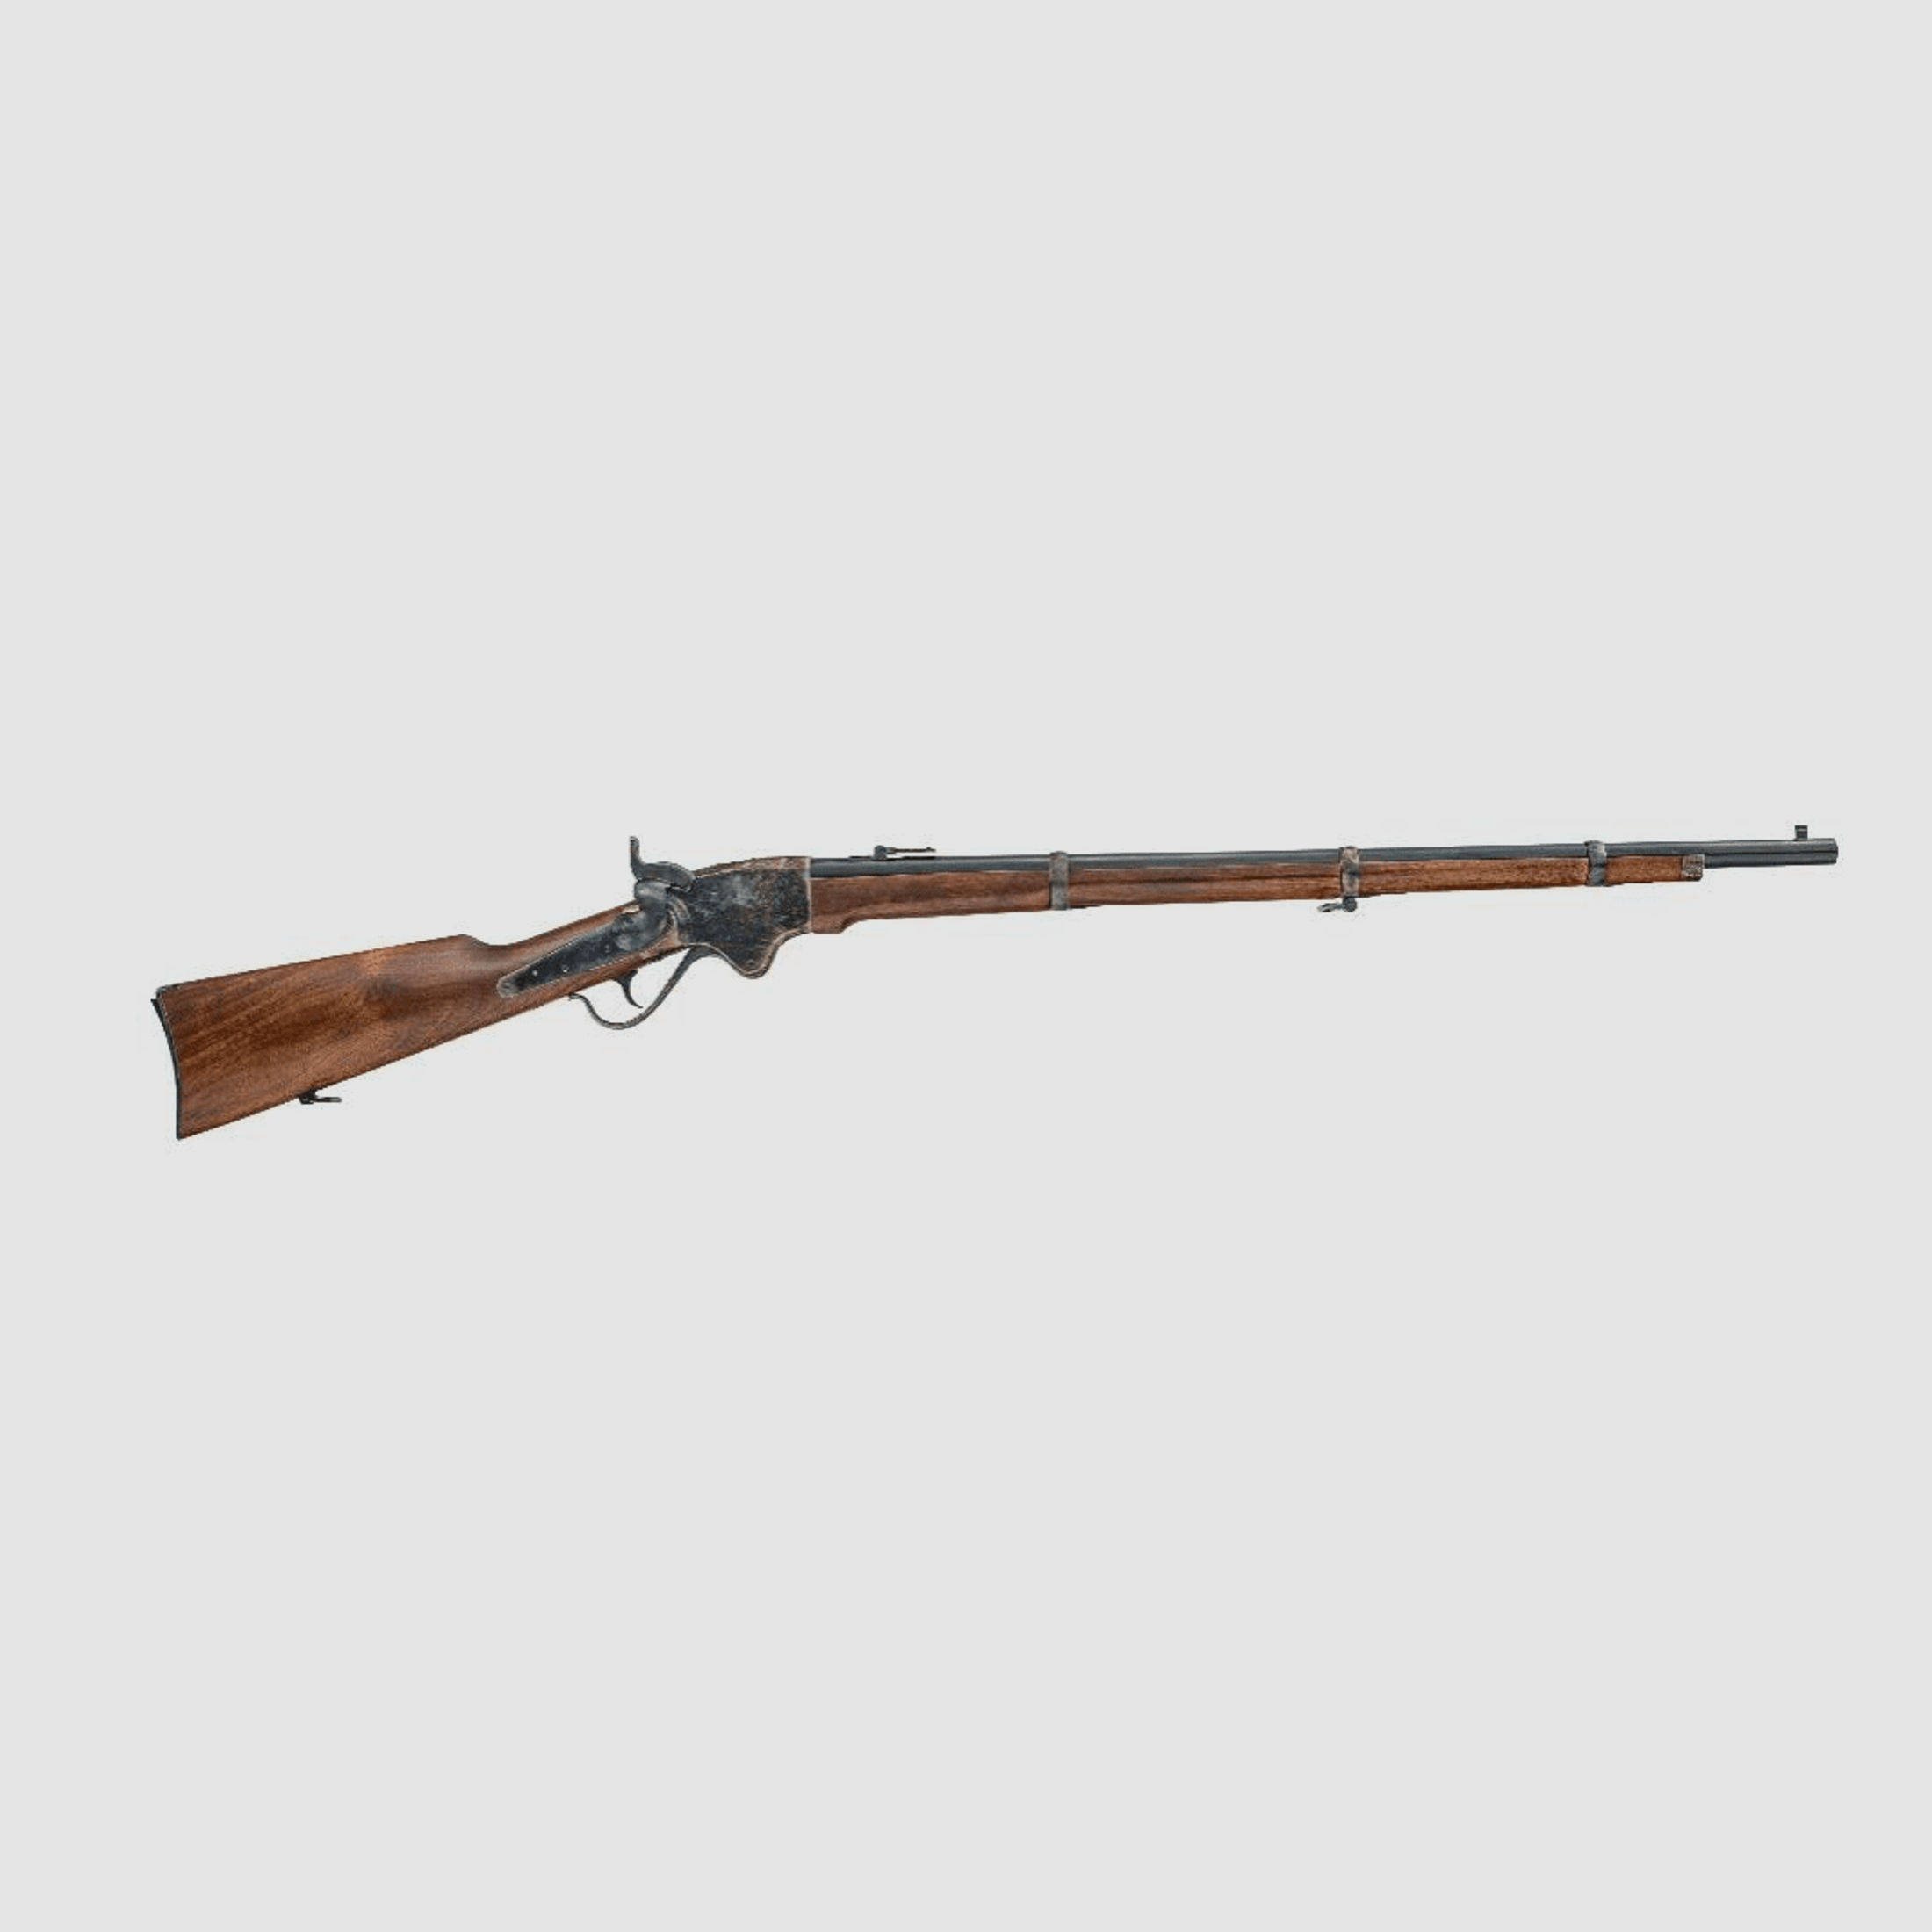 Chiappa 1860 Spencer Rifle Unterhebelrepetierbüchse Kal. .56-50